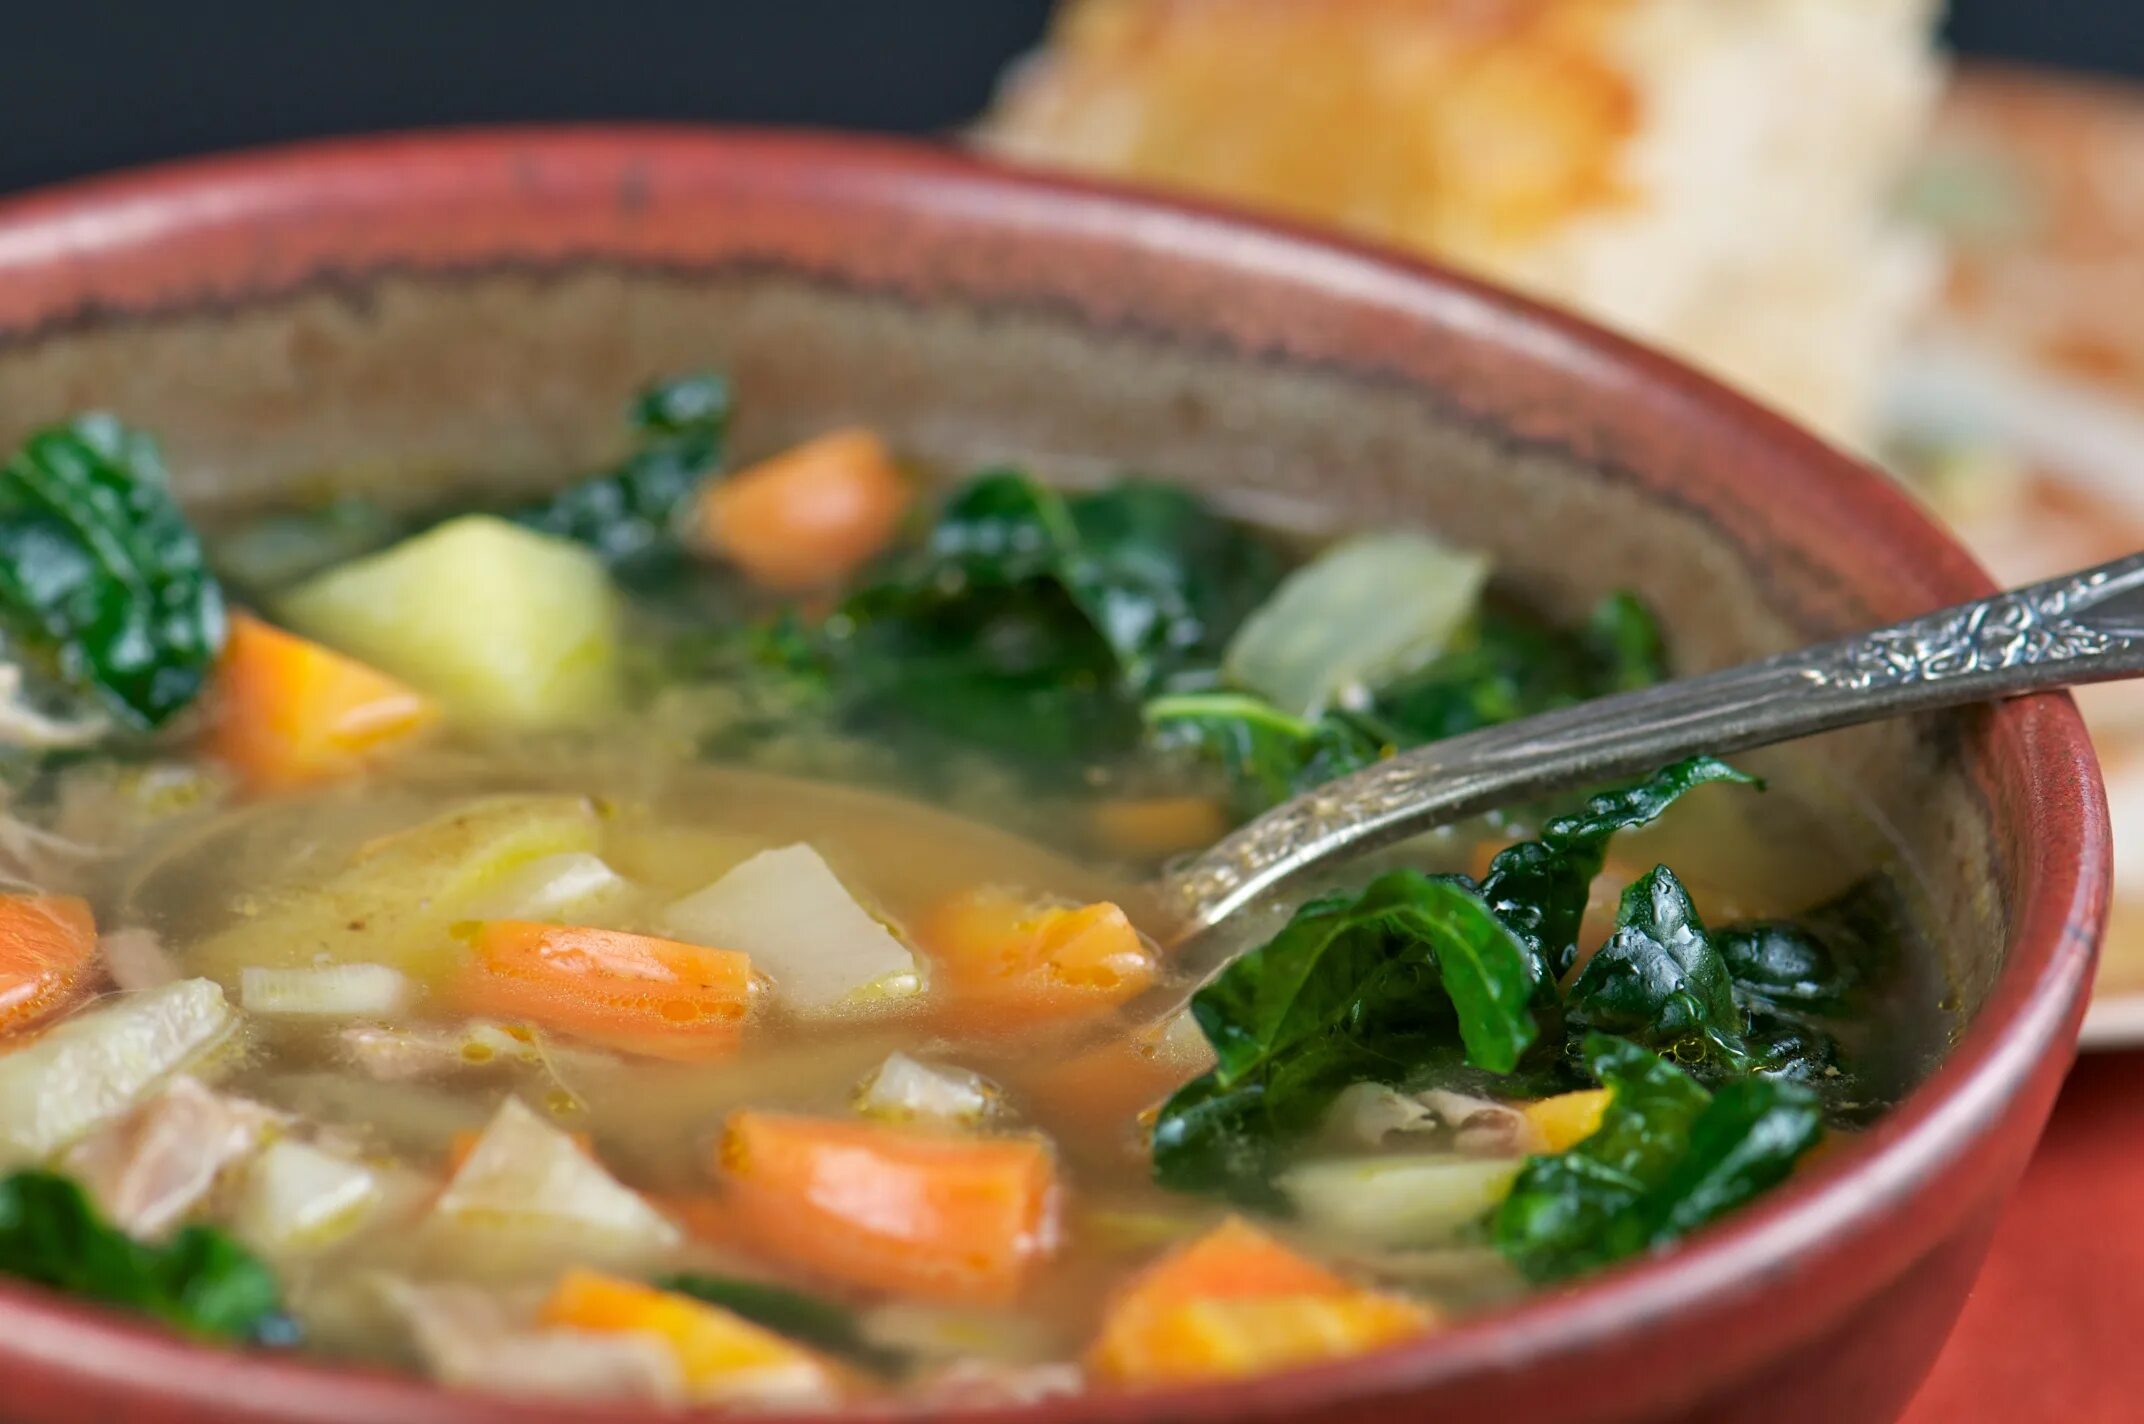 Soup get. Овощной суп с индейкой. Суп с индейкой и овощами. Суп из индейки с овощами. Овощной суп с горошком.